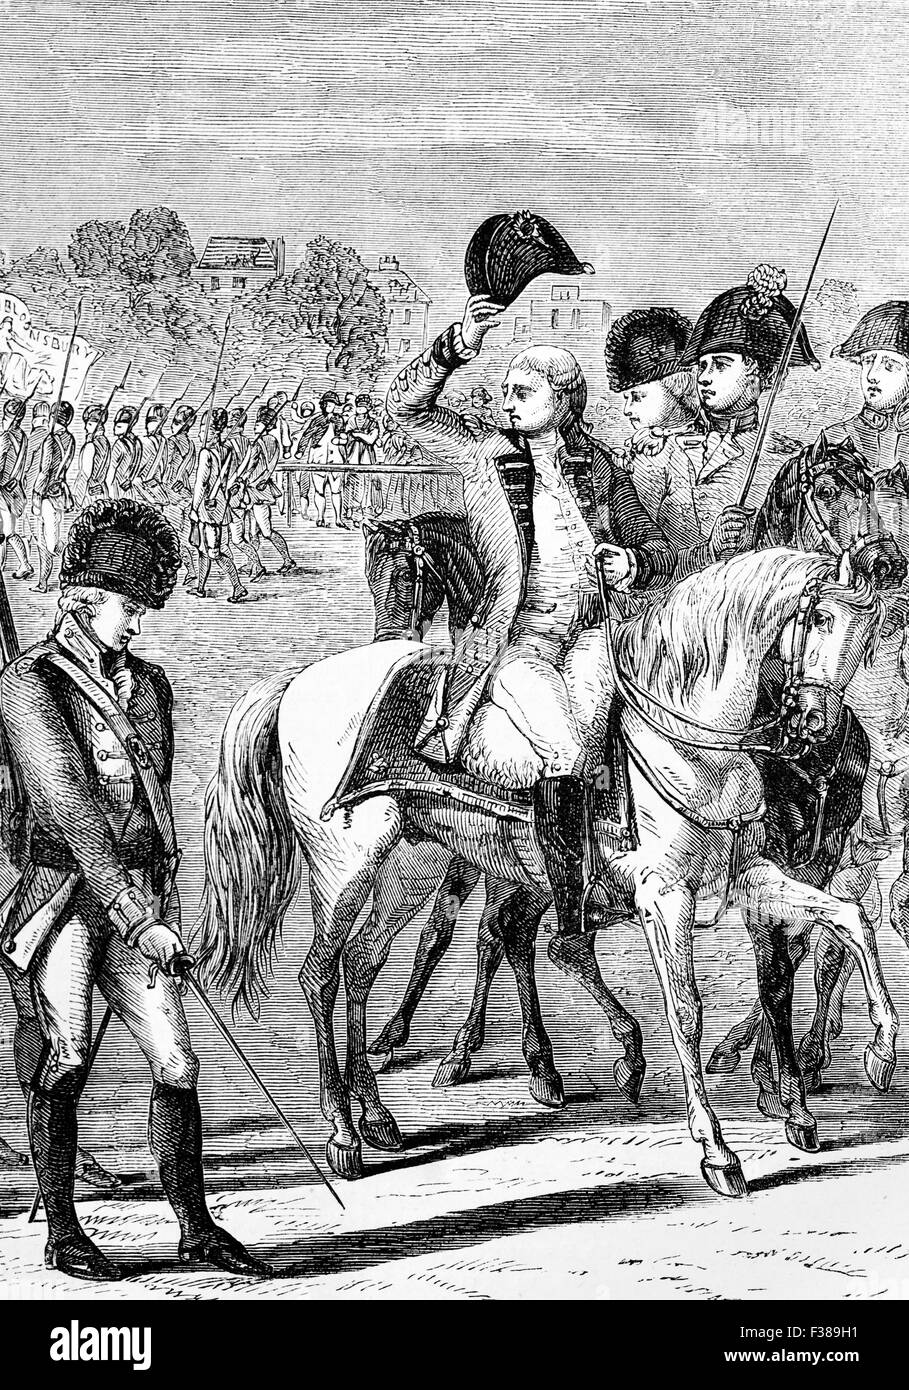 Le roi George III Examen des bénévoles dans le cadre de la préparations anti-invasion de 1804. Il y avait des réponses militaires et civils au Royaume-Uni pour l'invasion planifiée du Royaume-Uni. Banque D'Images